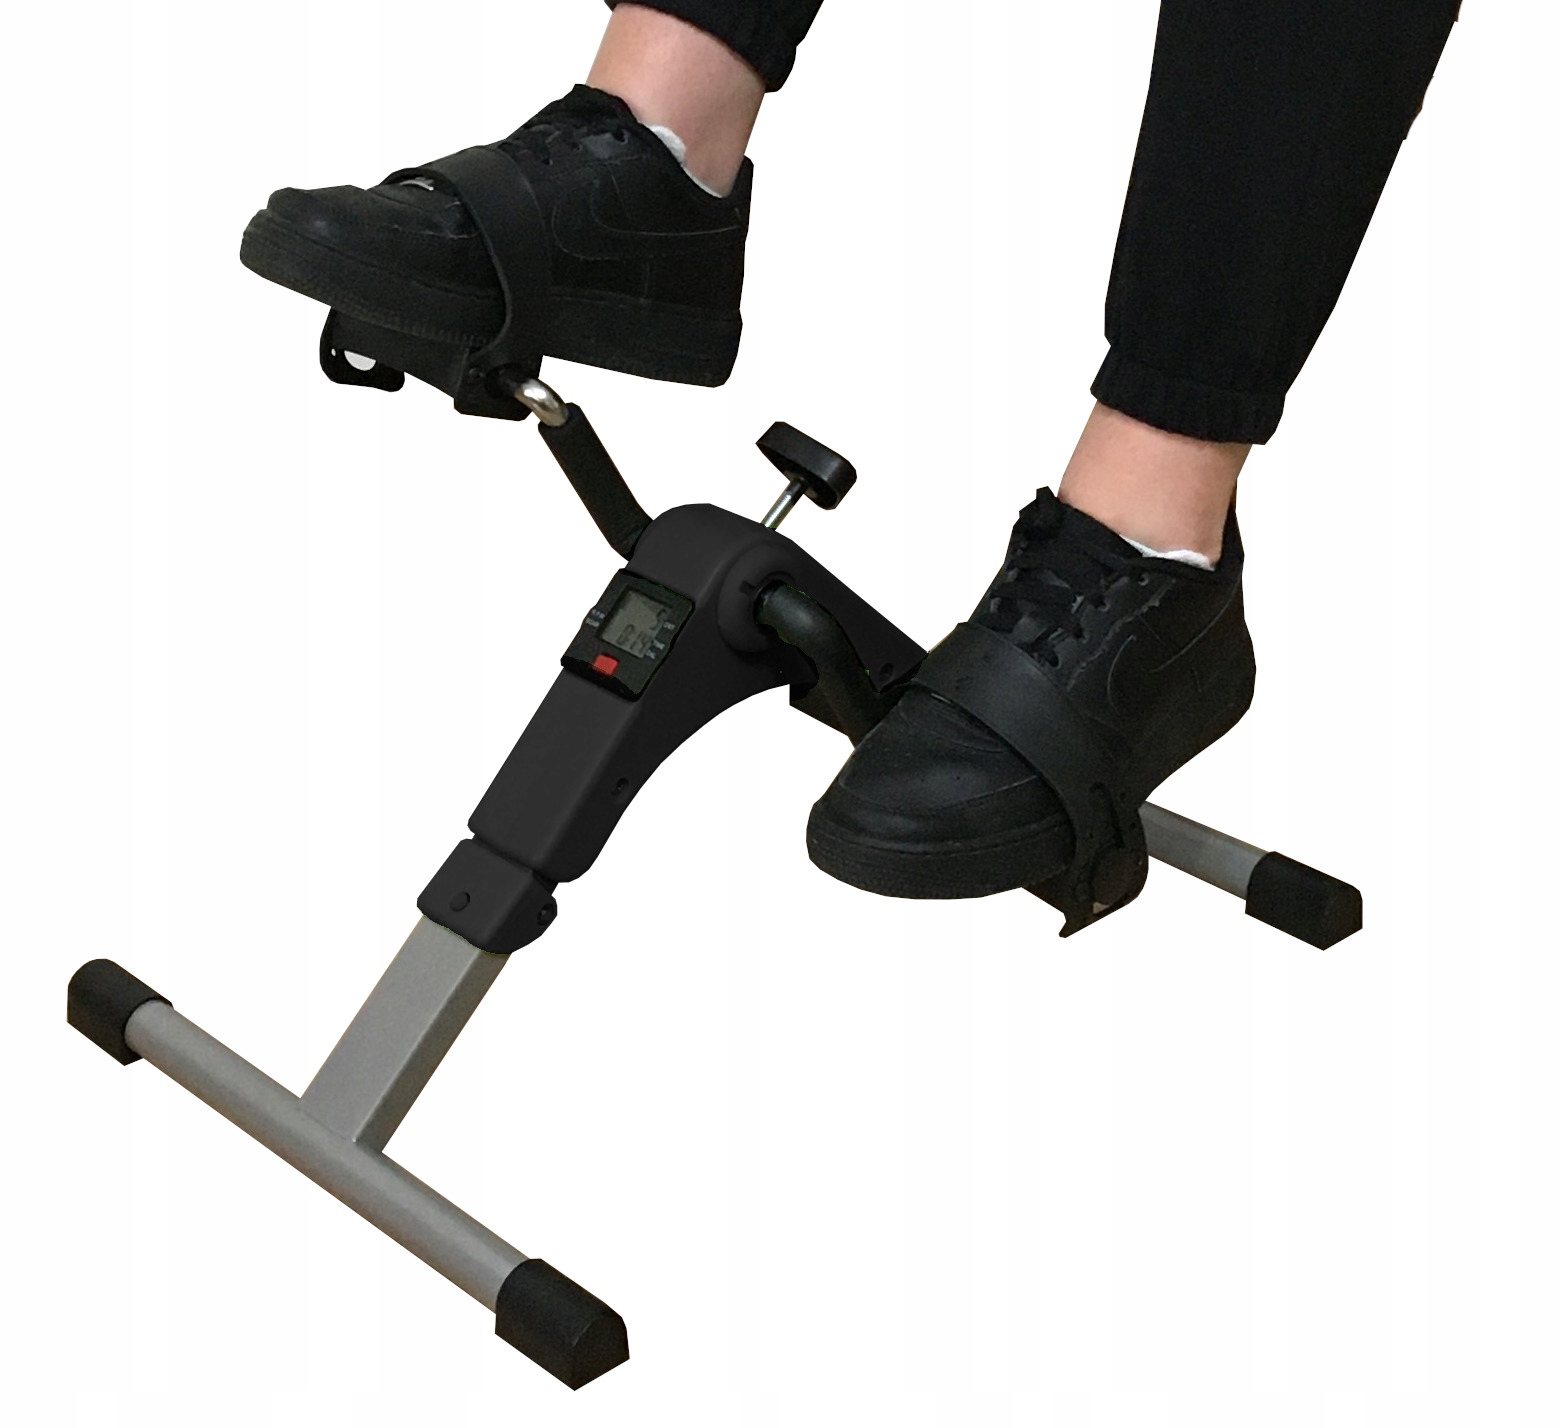 Реабилитационный велосипед РОТОР упражнения для рук и ног Состояние упаковки оригинал